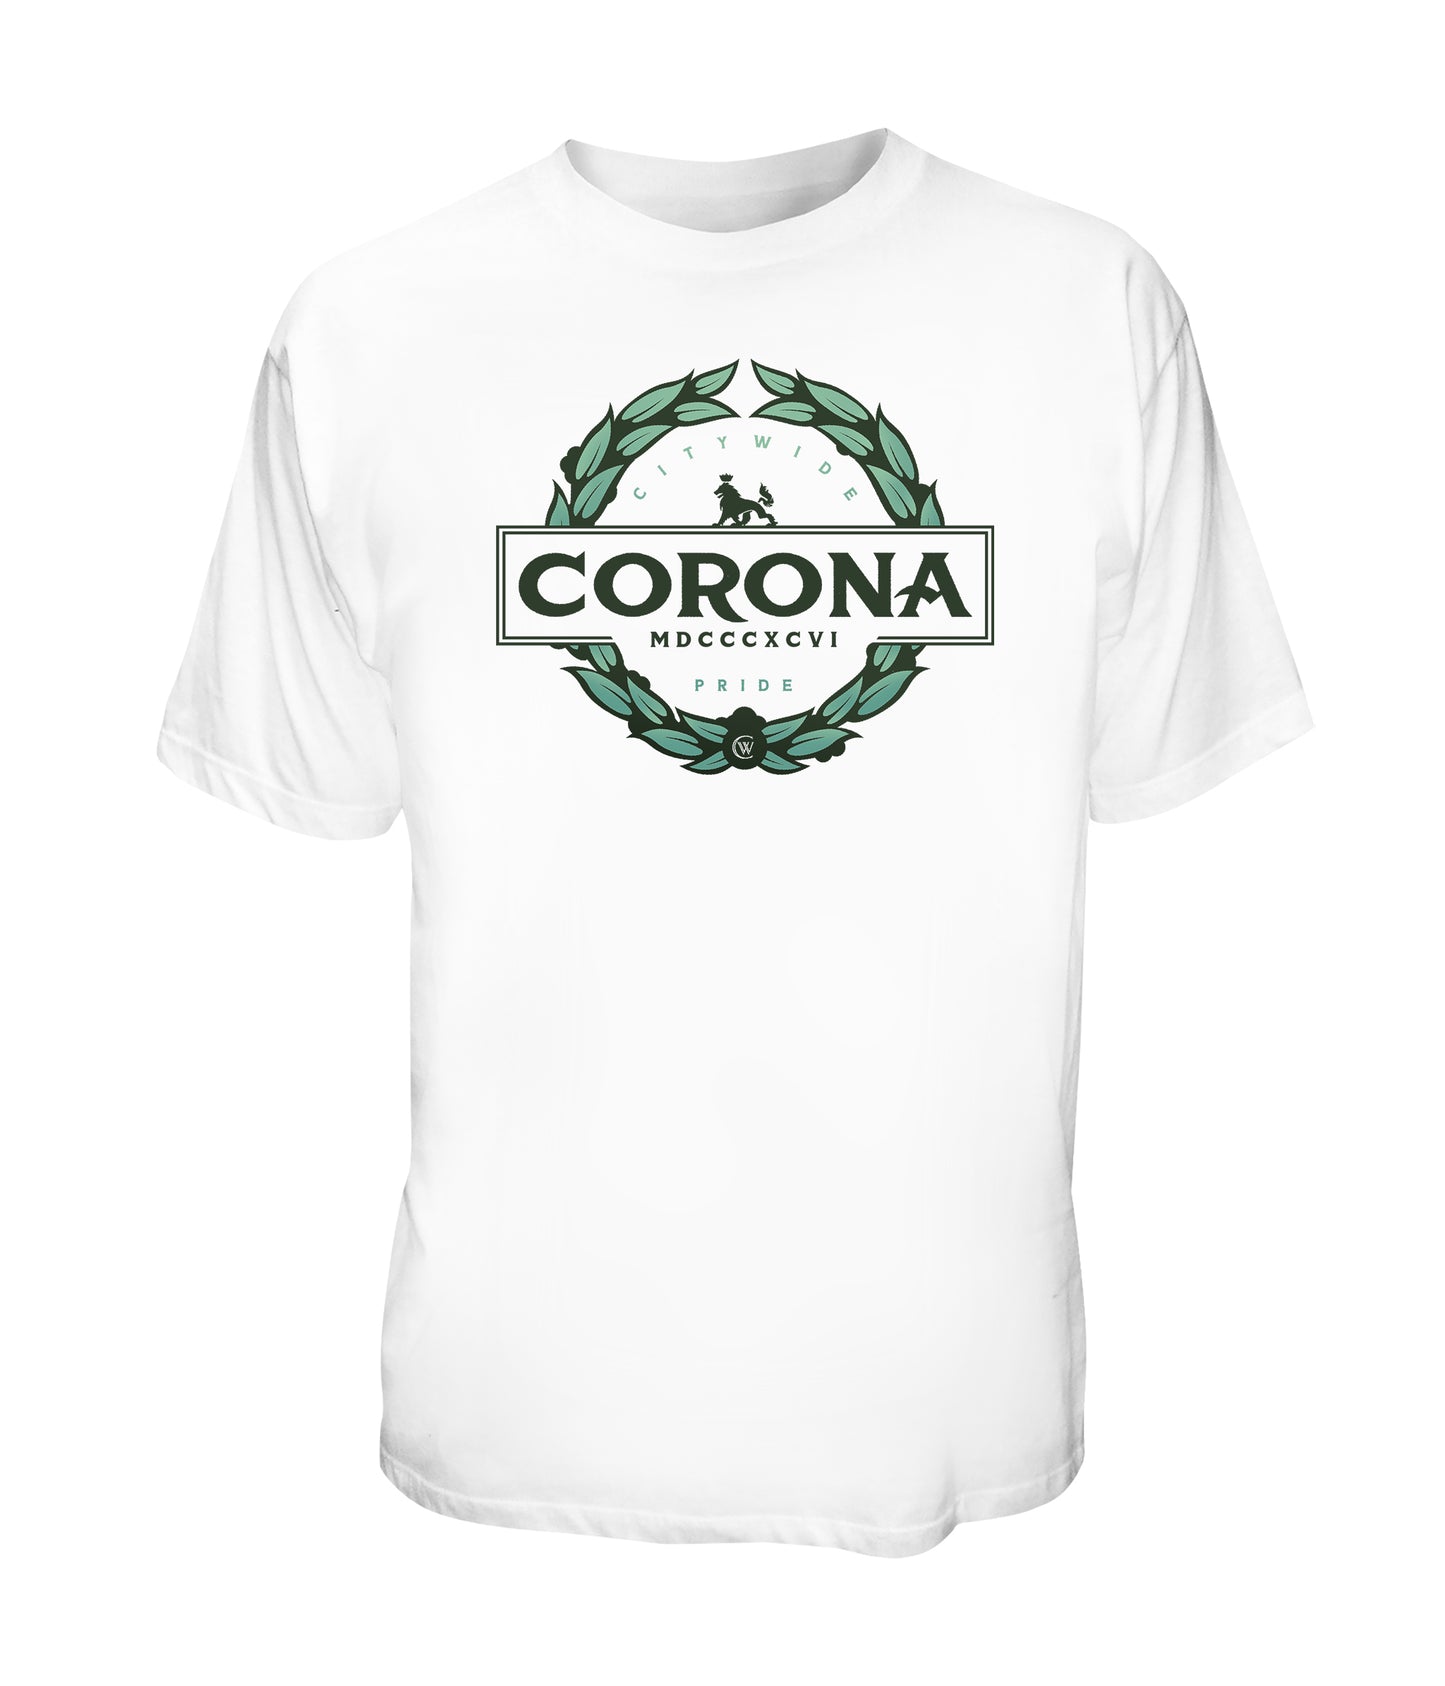 Corona The Pride